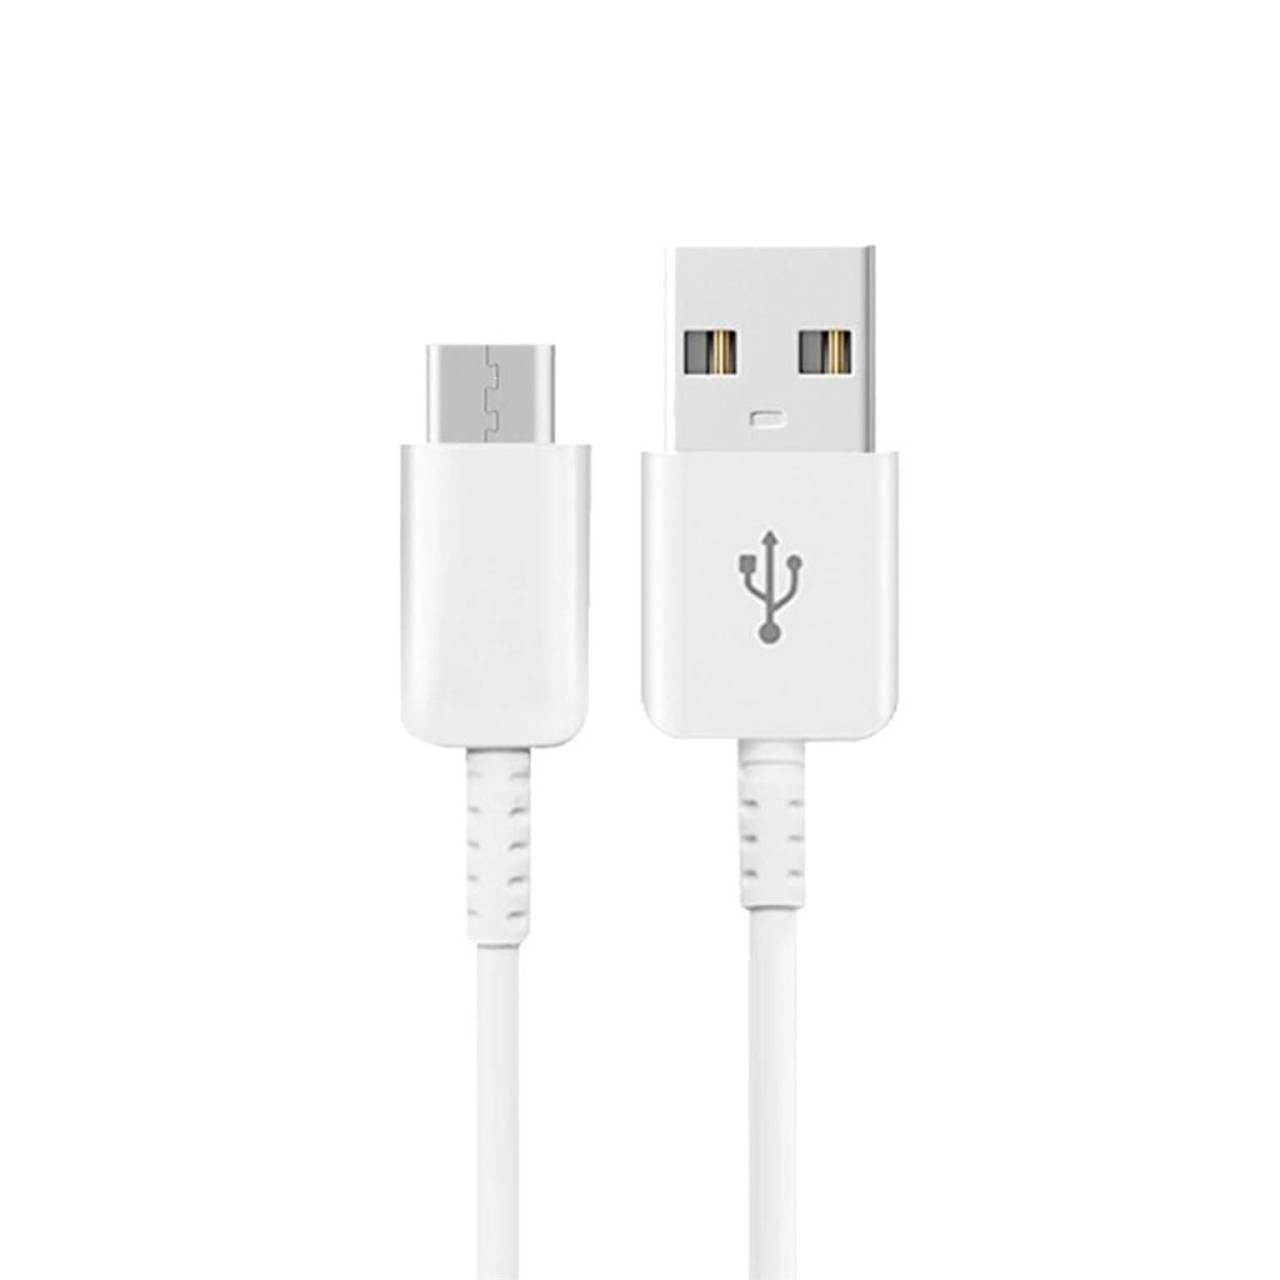 Samsung Ladekabel – USB-A auf USB-C für Smartphones und andere Geräte, Schnellladekabel, Länge 1,2 m